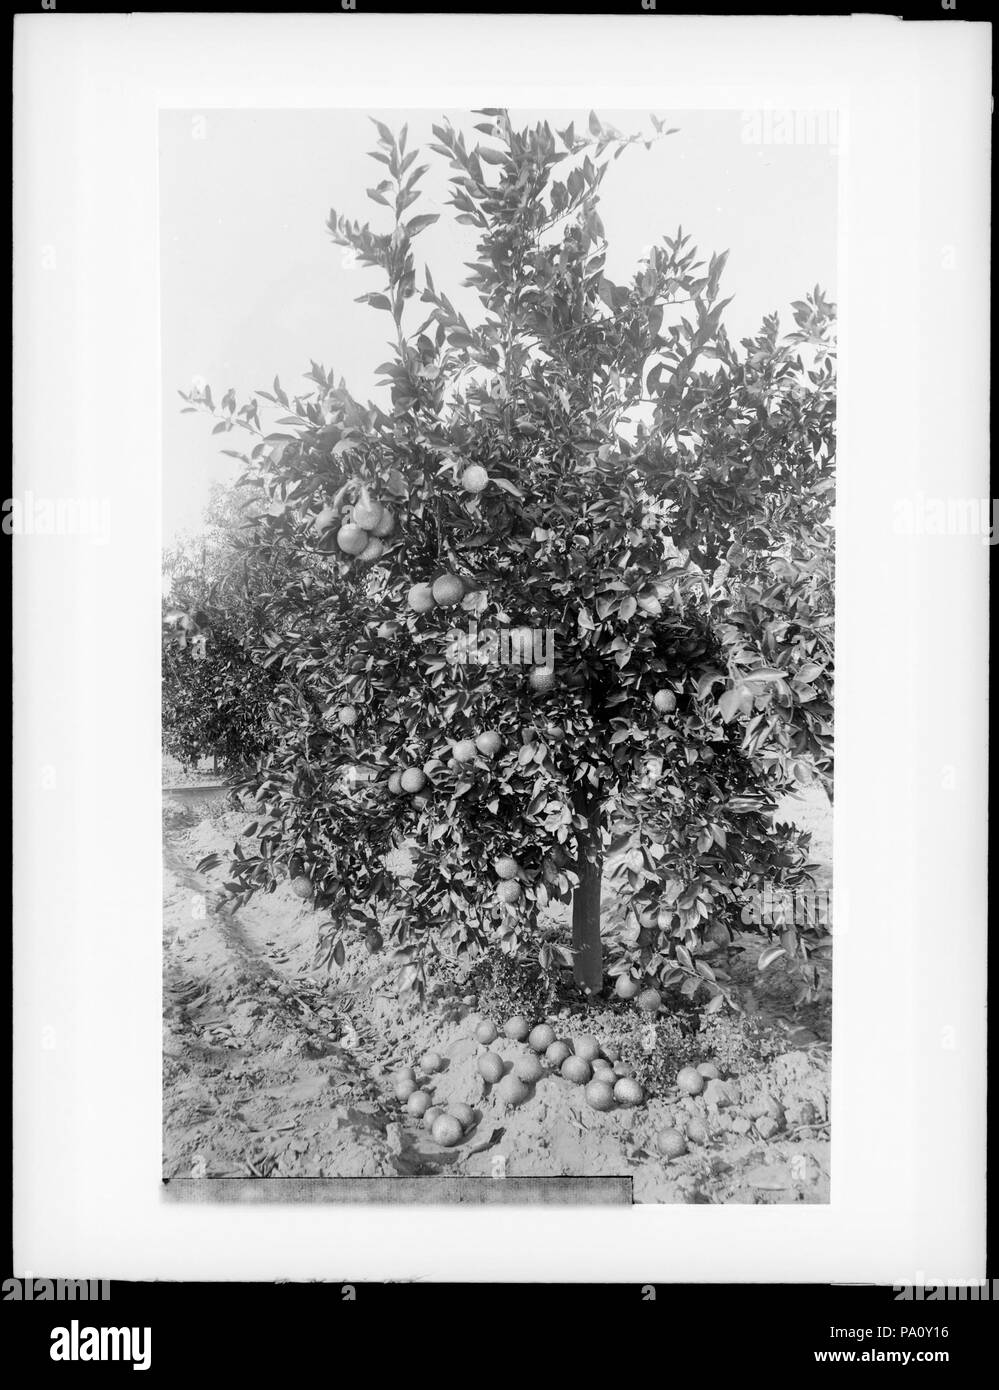 . Anglais : quatre ans (orange citron ?) arbre chargé d'oranges (citrons ?) 'à H.S. La neige', Riverside, Californie, ca.1910 Photo de quatre ans (orange citron ?) arbre chargé d'oranges (citrons ?) 'à H.S. La neige', Riverside, Californie, ca.1910. Fruit est visible sur le sol sous l'arbre dans quelques ornières. Numéro d'appel : CHS-172 Nom du fichier : COUVERTURE DU SHC-172 Date : vers 1910 Partie de Collection : Collection de la Société historique de Californie, 1860-1960 Format : négatifs sur plaque de verre Type : objet géographique des images (ville ou lieu habité) : Nom : Référentiel Riverside Bibliothèques USC Coll Spécial Banque D'Images